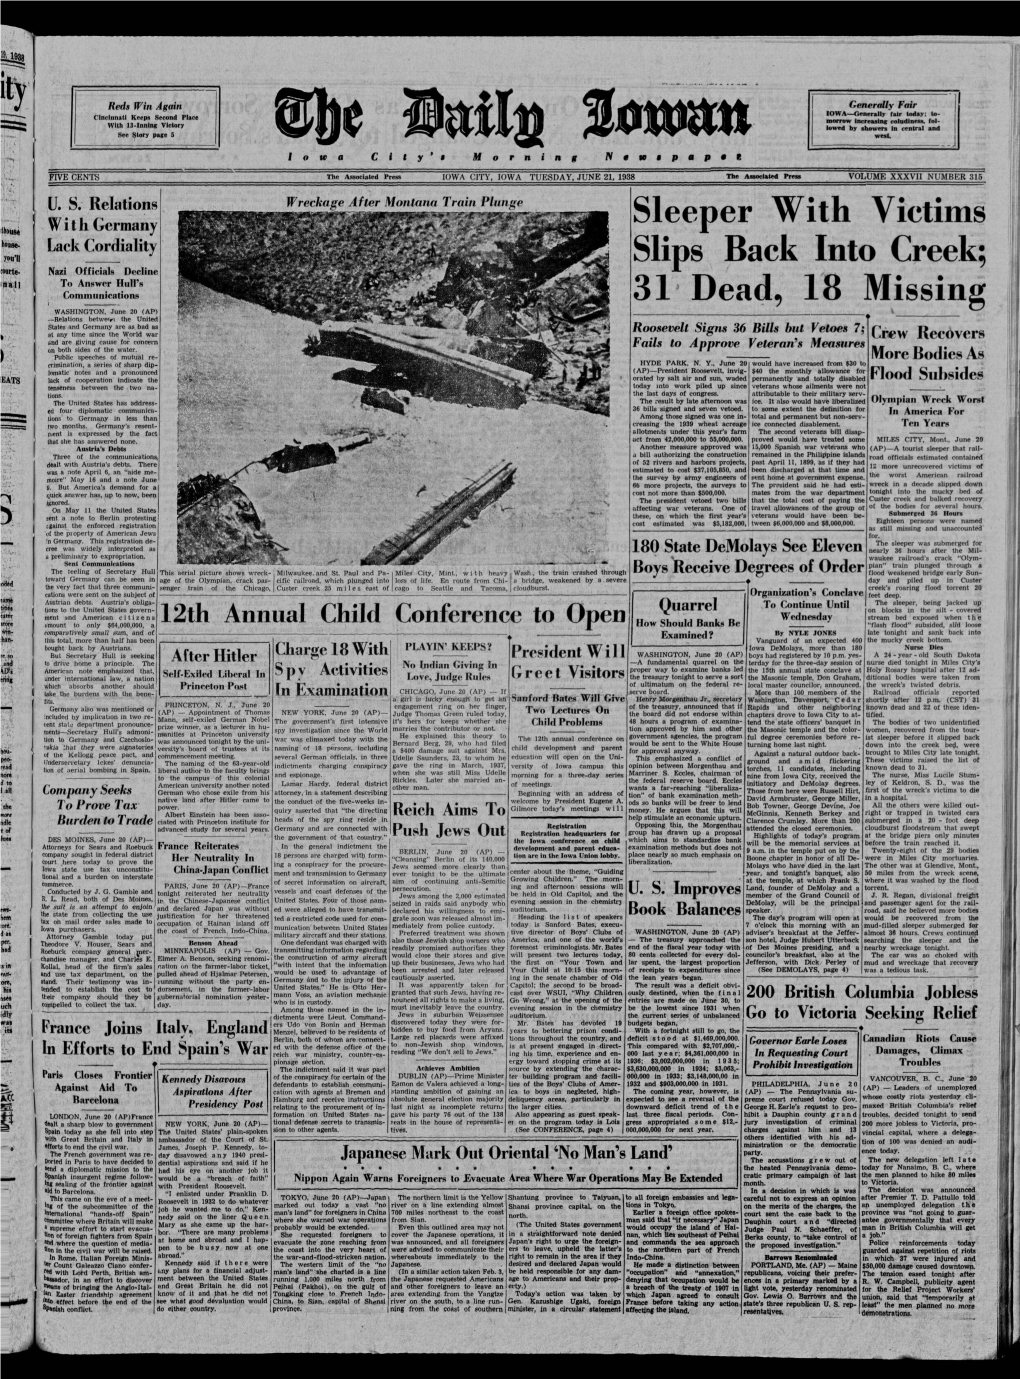 Daily Iowan (Iowa City, Iowa), 1938-06-21